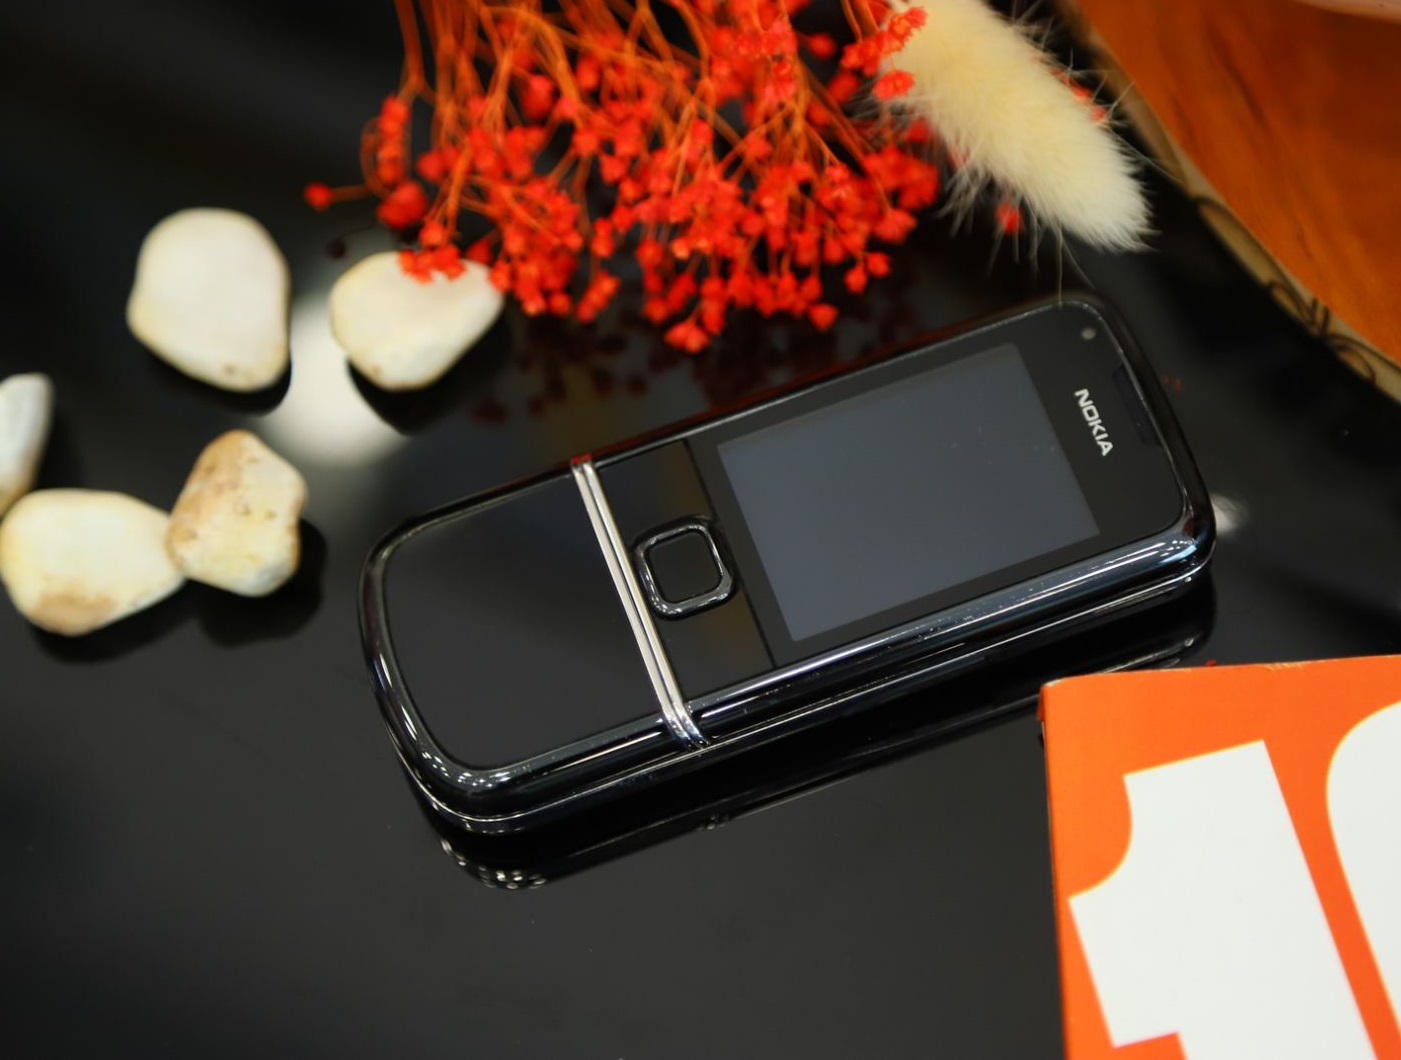 Nokia 8800E Arte Black - mẫu điện thoại di động số mang đậm phong cách của Nokia. Hãy nhanh tay khám phá hình ảnh của mẫu điện thoại này để chiêm ngưỡng vẻ đẹp sang trọng cùng các tính năng vượt trội.